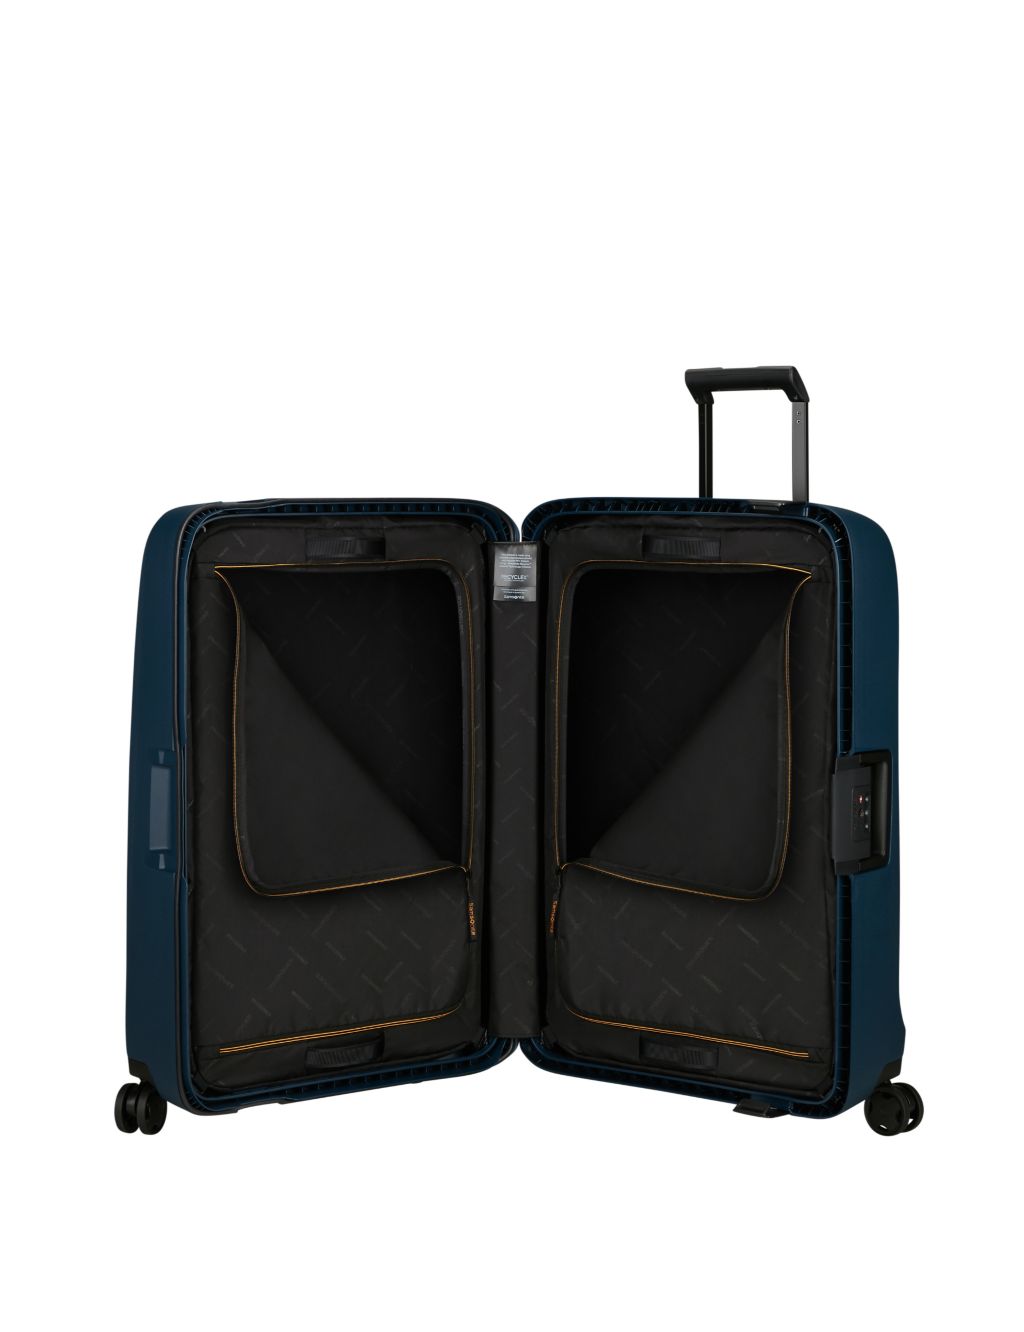 Essens 4 Wheel Hard Shell Large Suitcase image 3